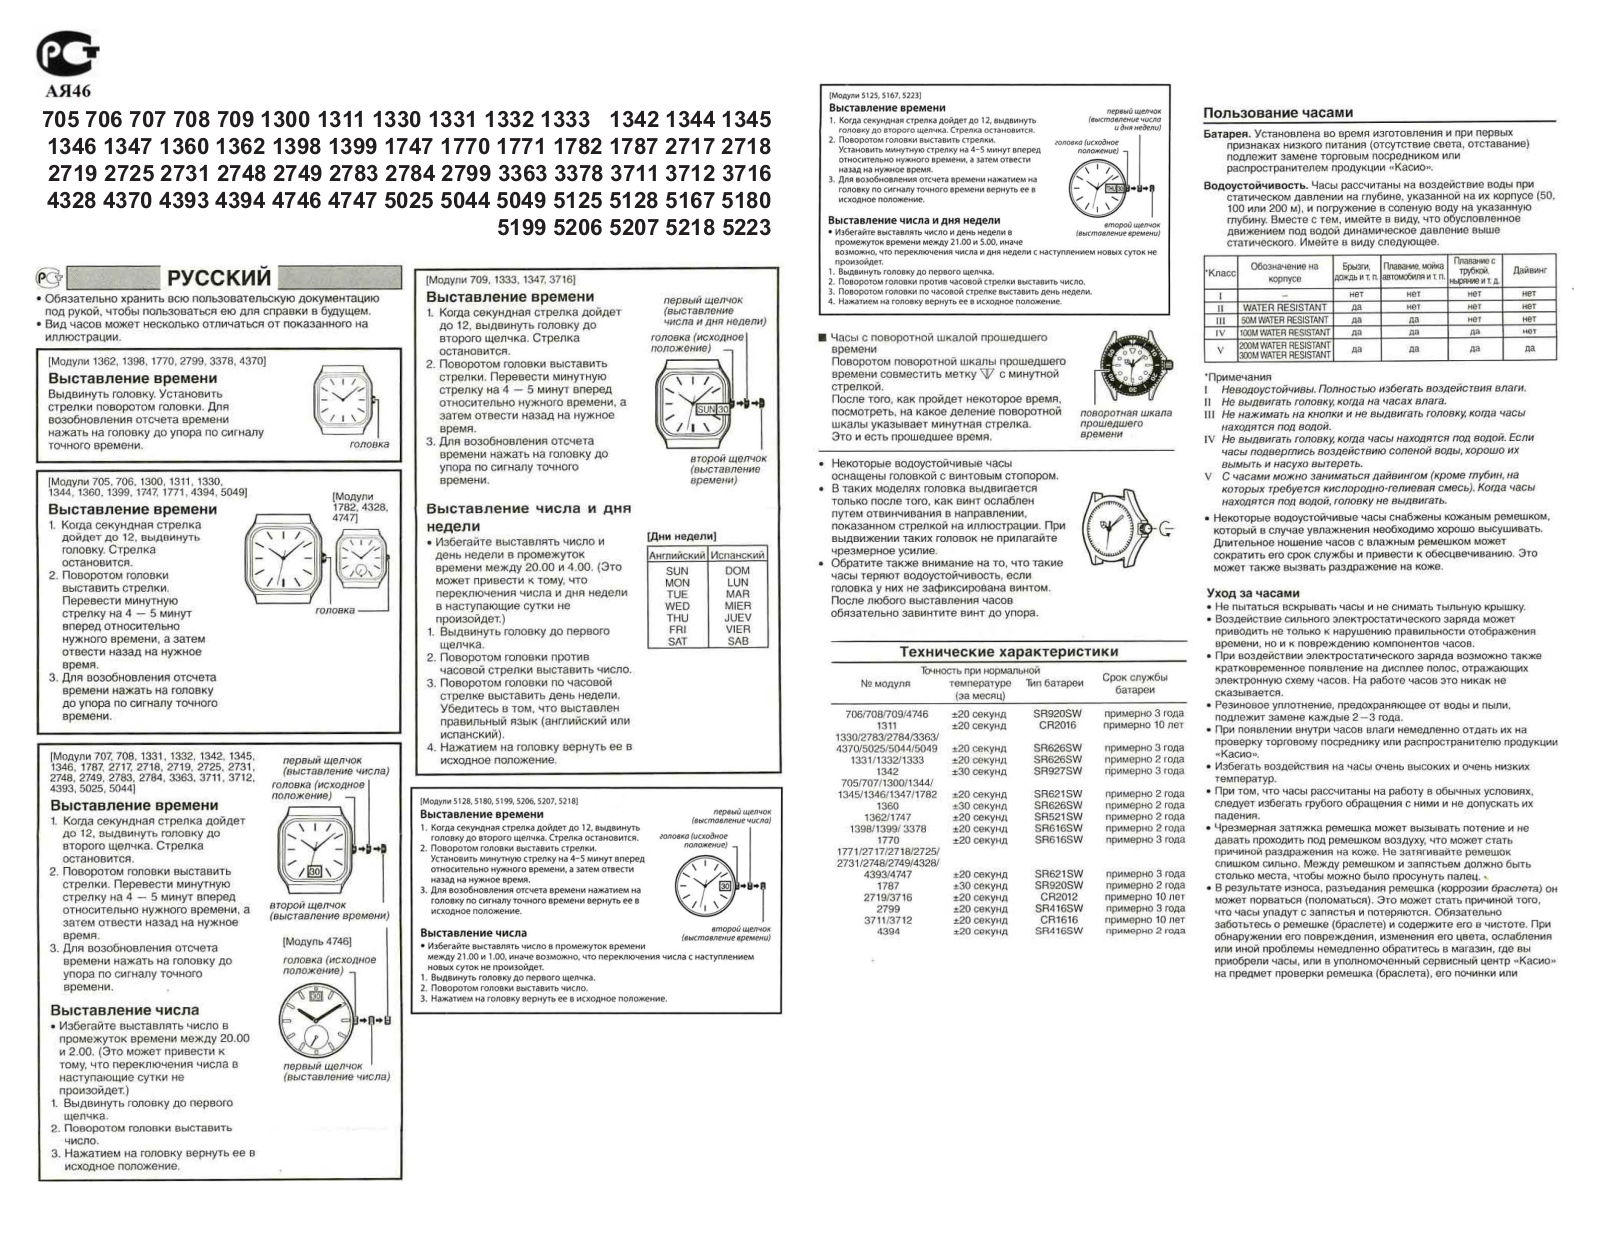 Casio 2748 User Manual